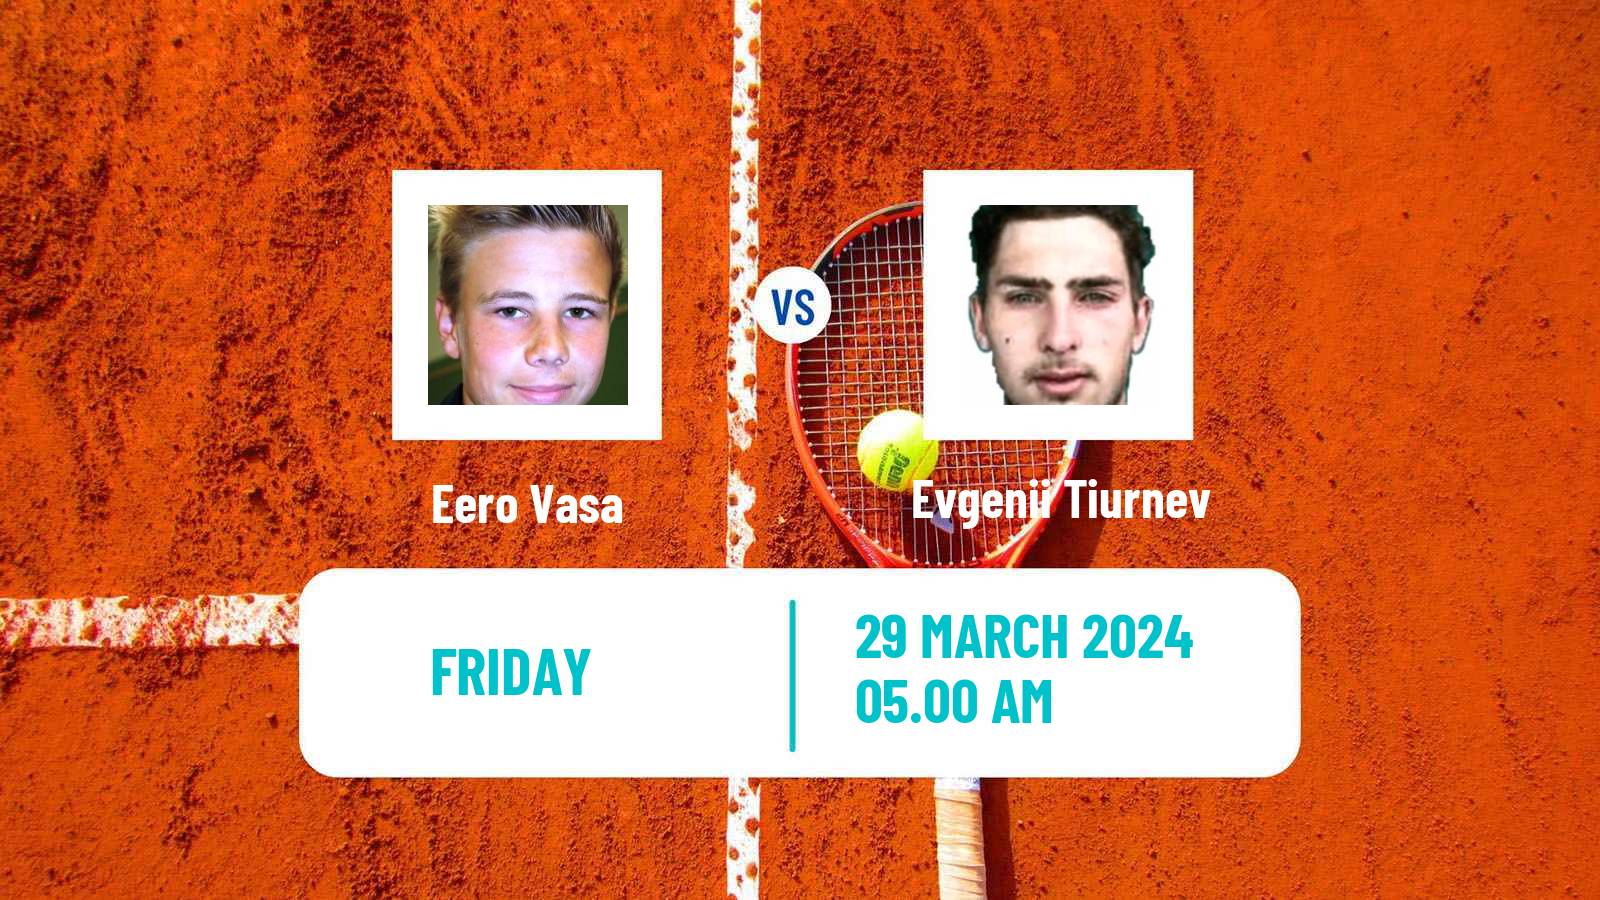 Tennis ITF M15 Antalya 8 Men Eero Vasa - Evgenii Tiurnev